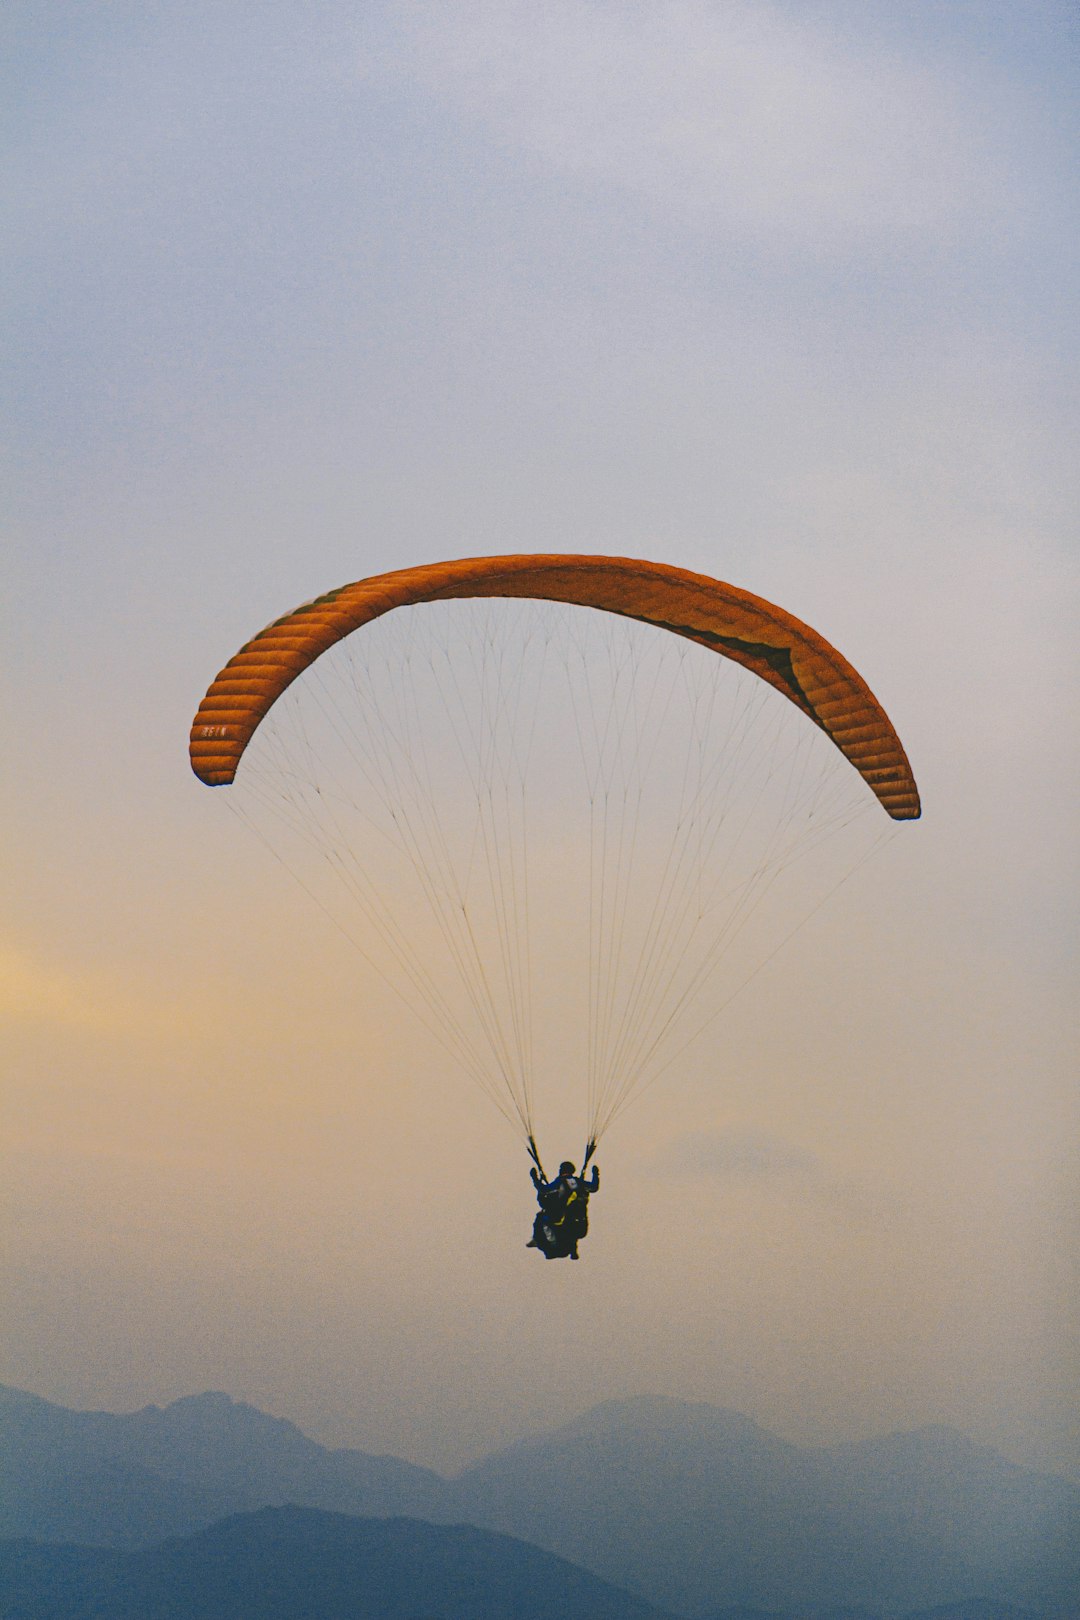 people parasailing midair